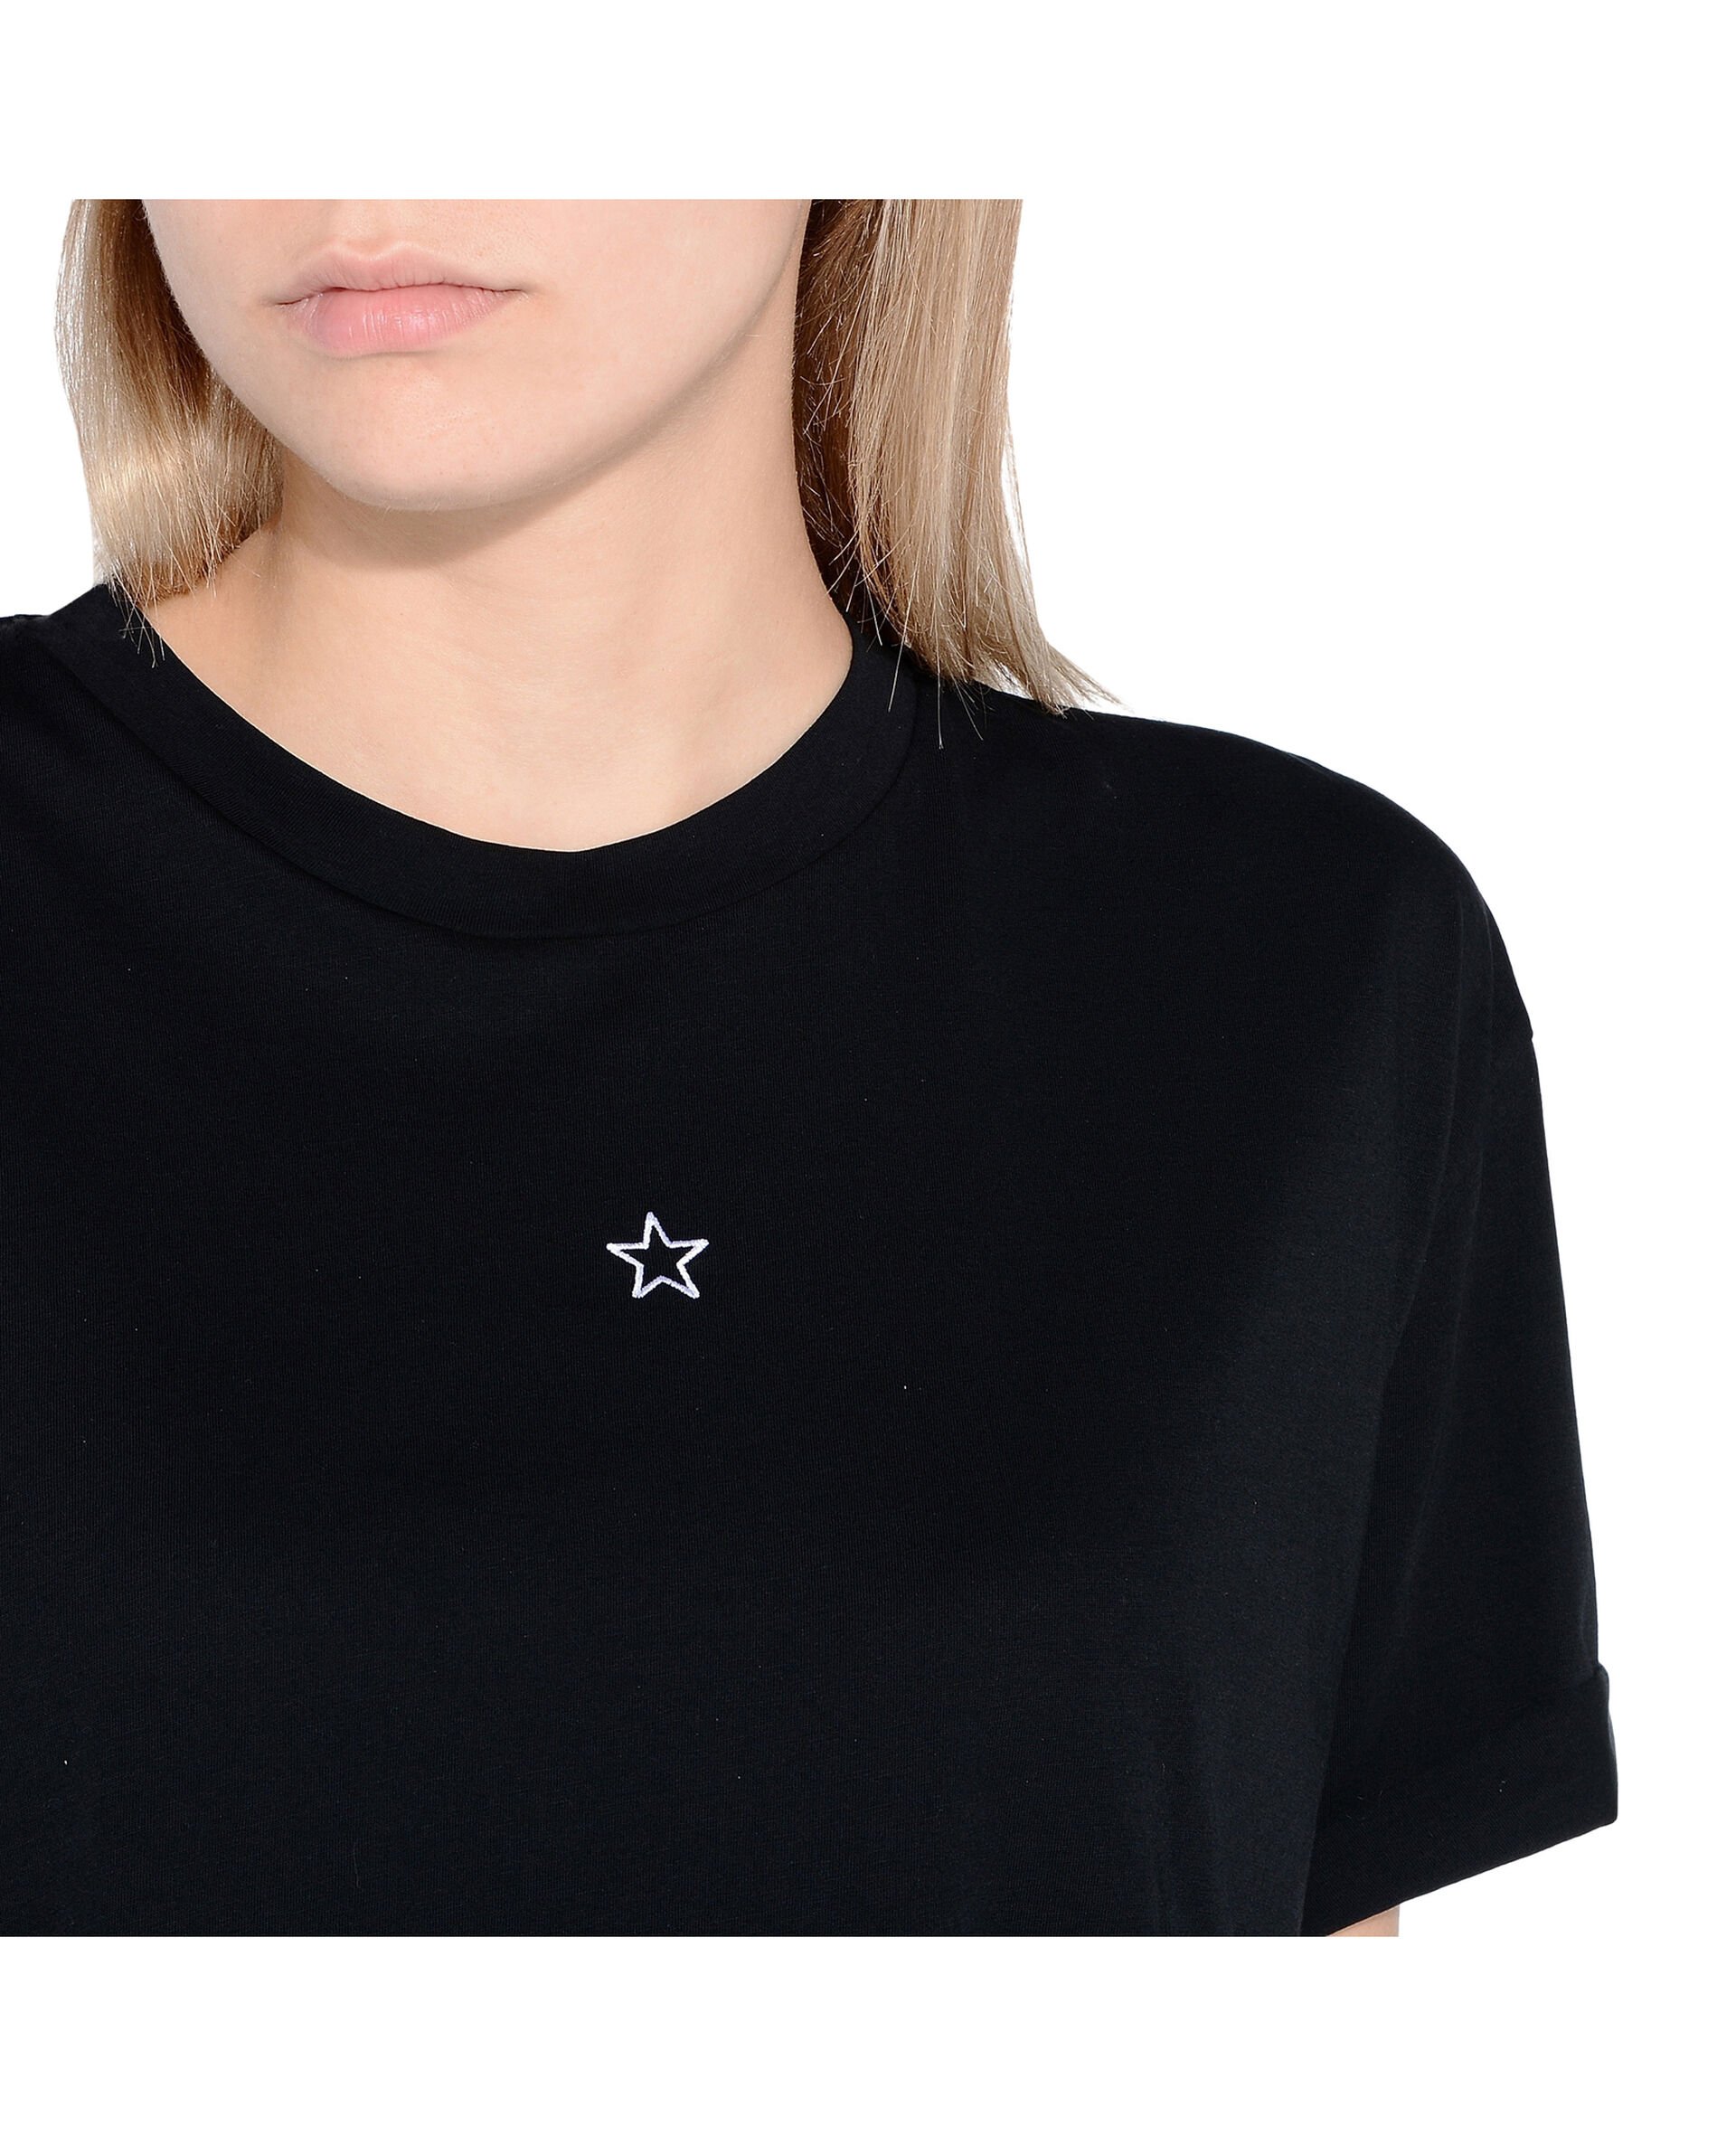 Ministar T-shirt-Black-large image number 3